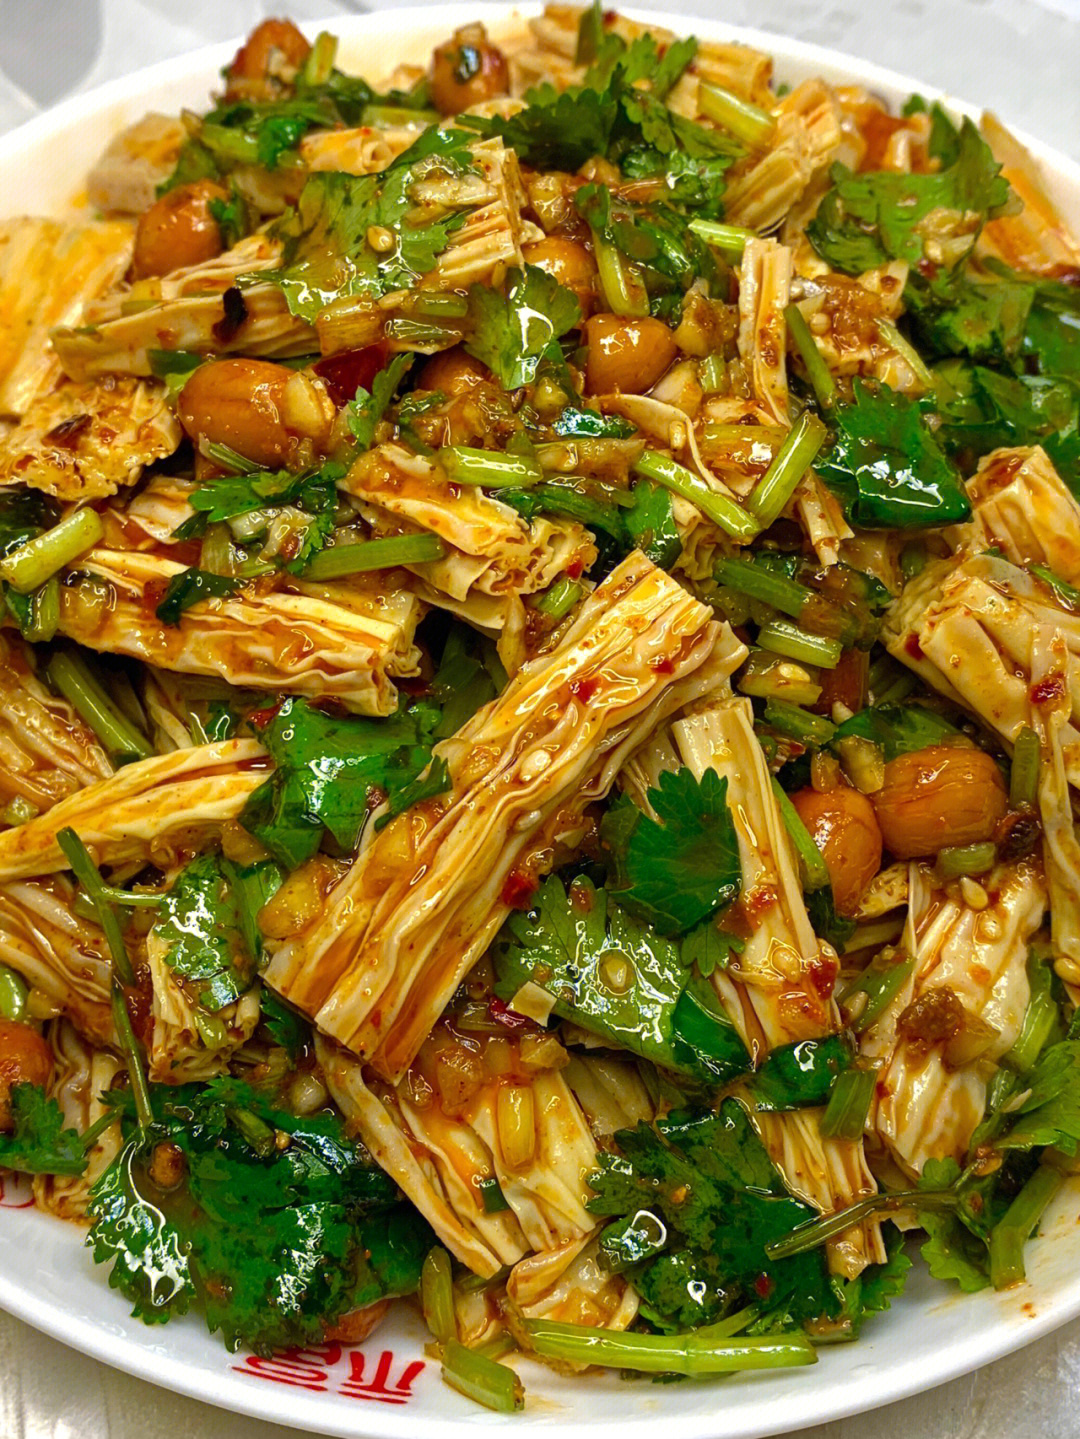 凉拌菜,绝对一次成功食材准备:腐竹,香菜,葱蒜,花生米7815做法